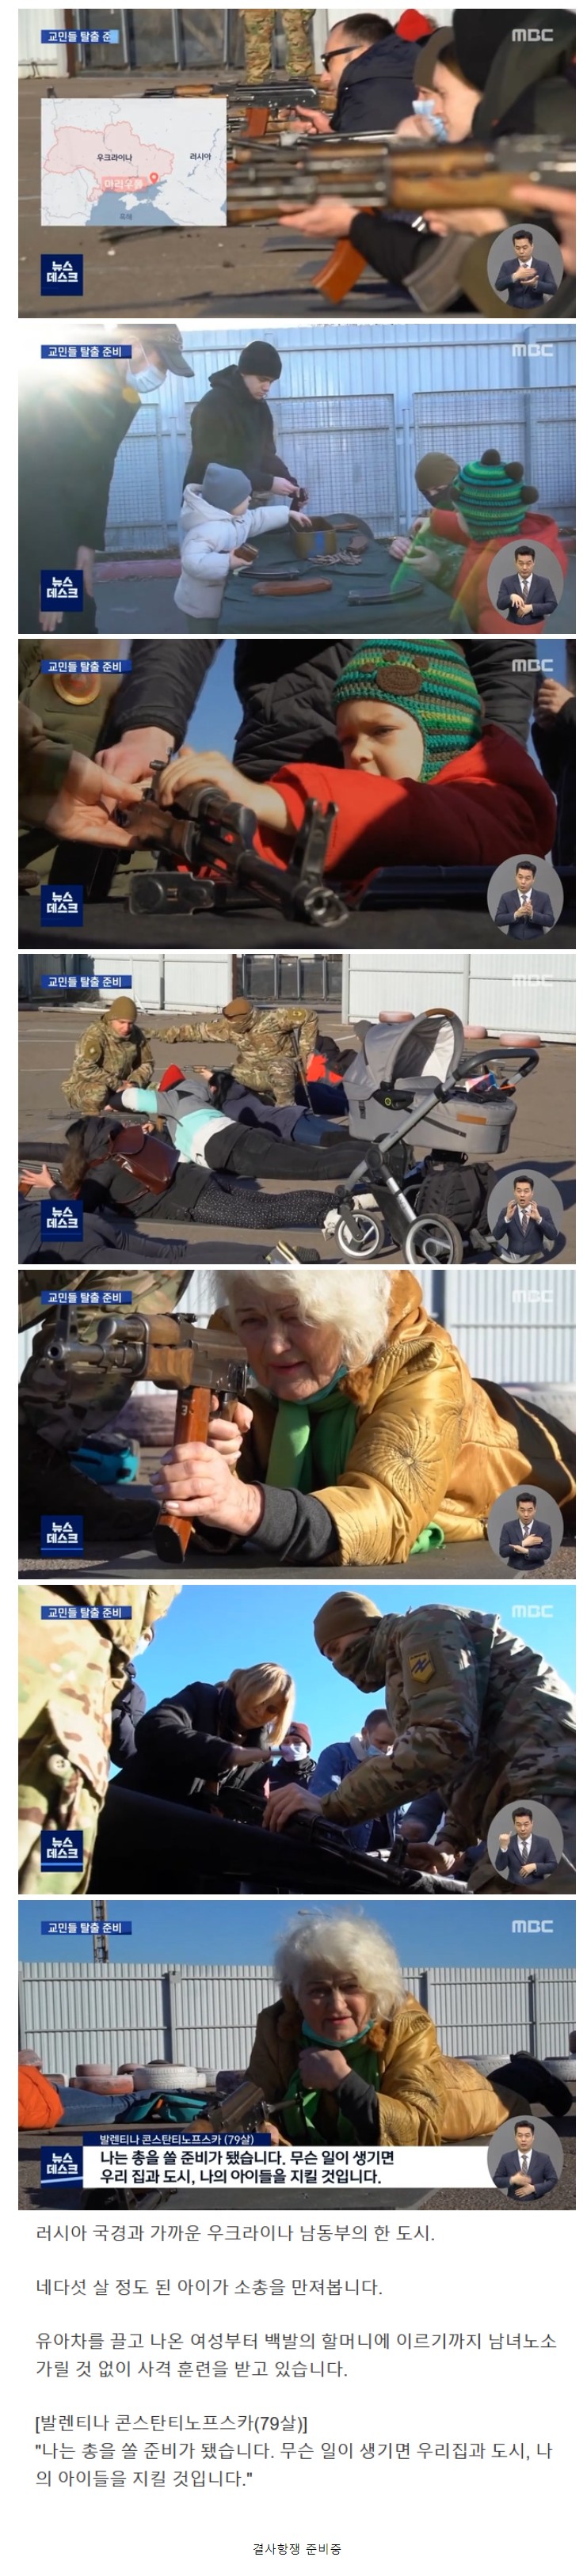 썸네일-우크라이나 국민들 근황-이미지